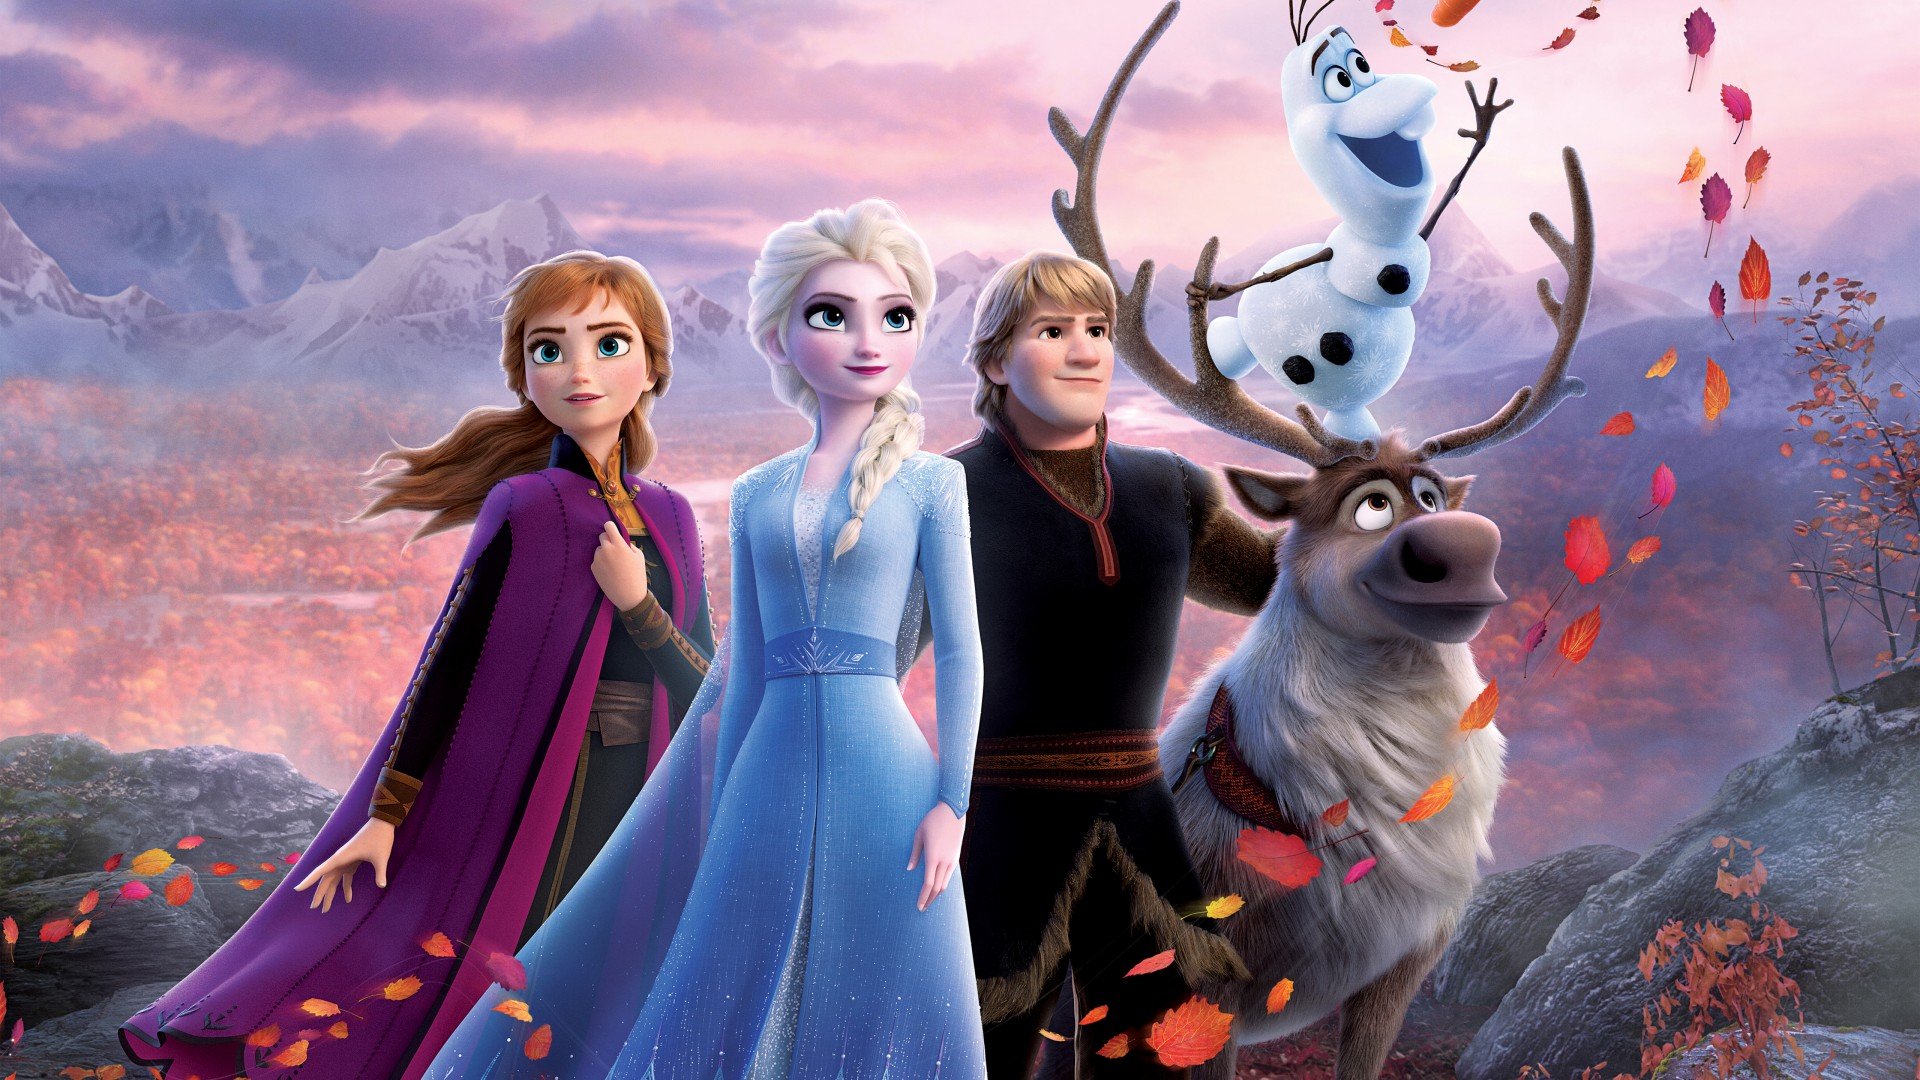 Crítica: "Frozen 2" funciona tão bem quanto o filme original | A ...